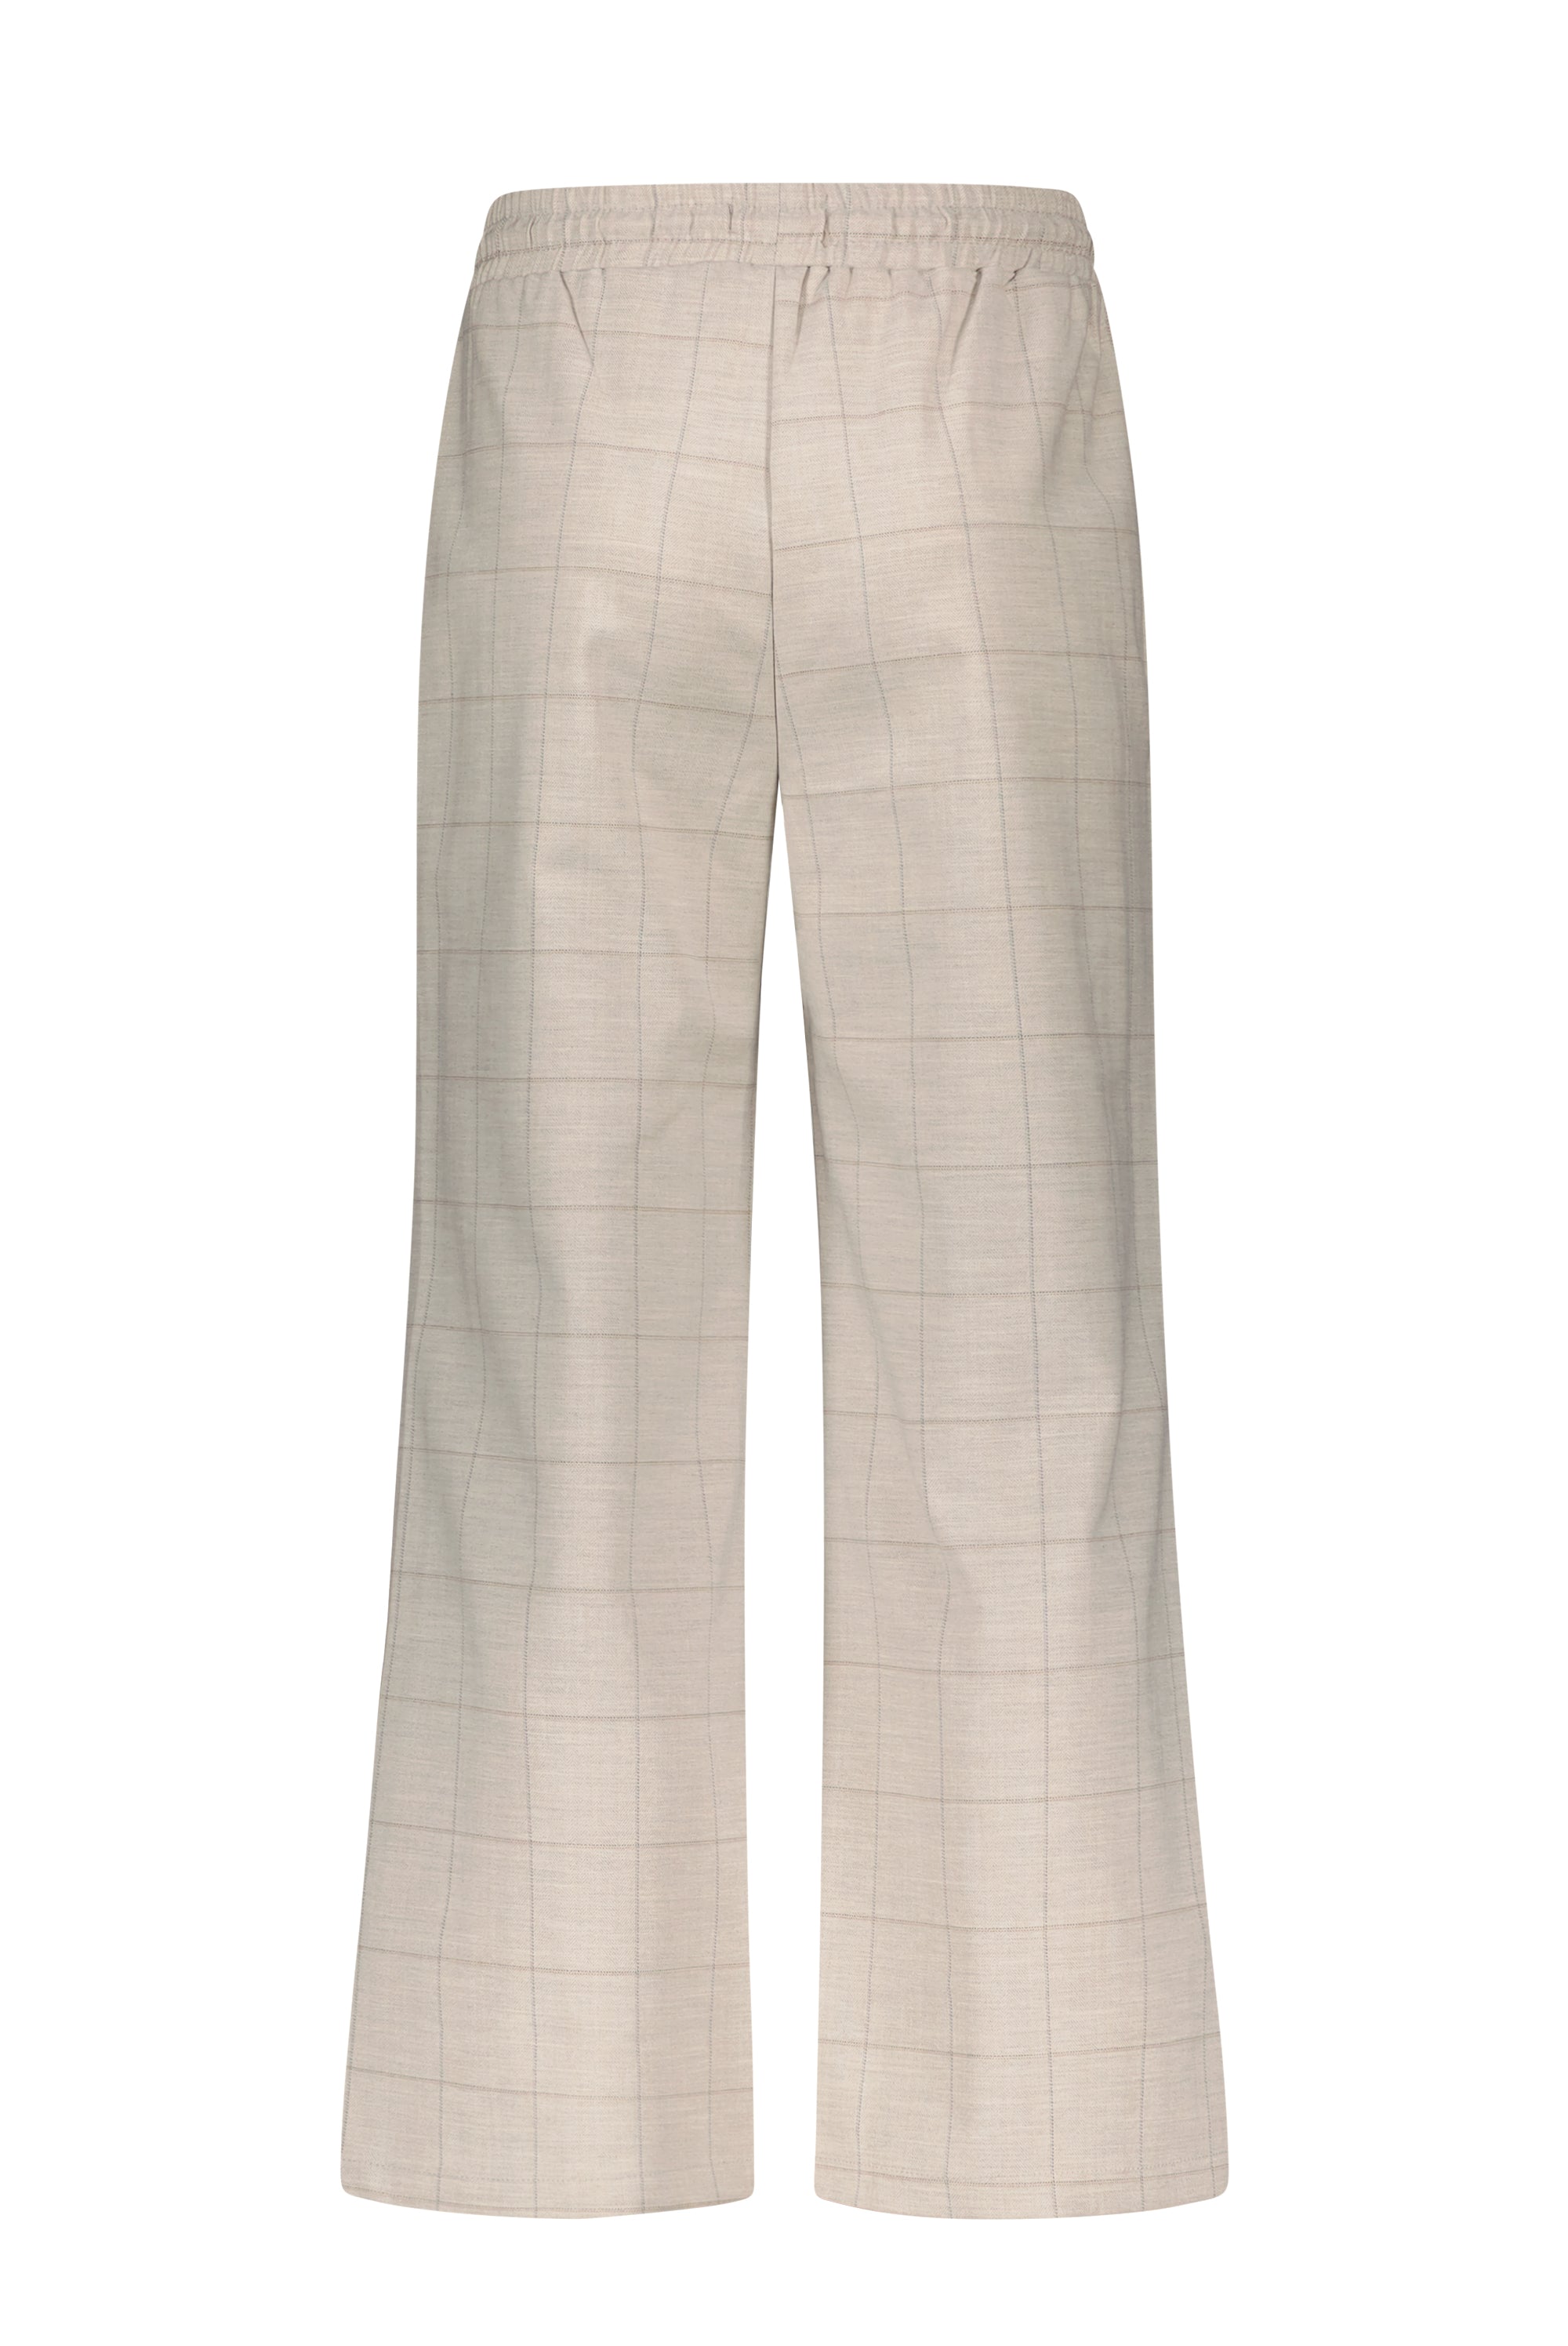 Meisjes Sayla palazzo checkered pants van  in de kleur Pearl in maat 170-176.